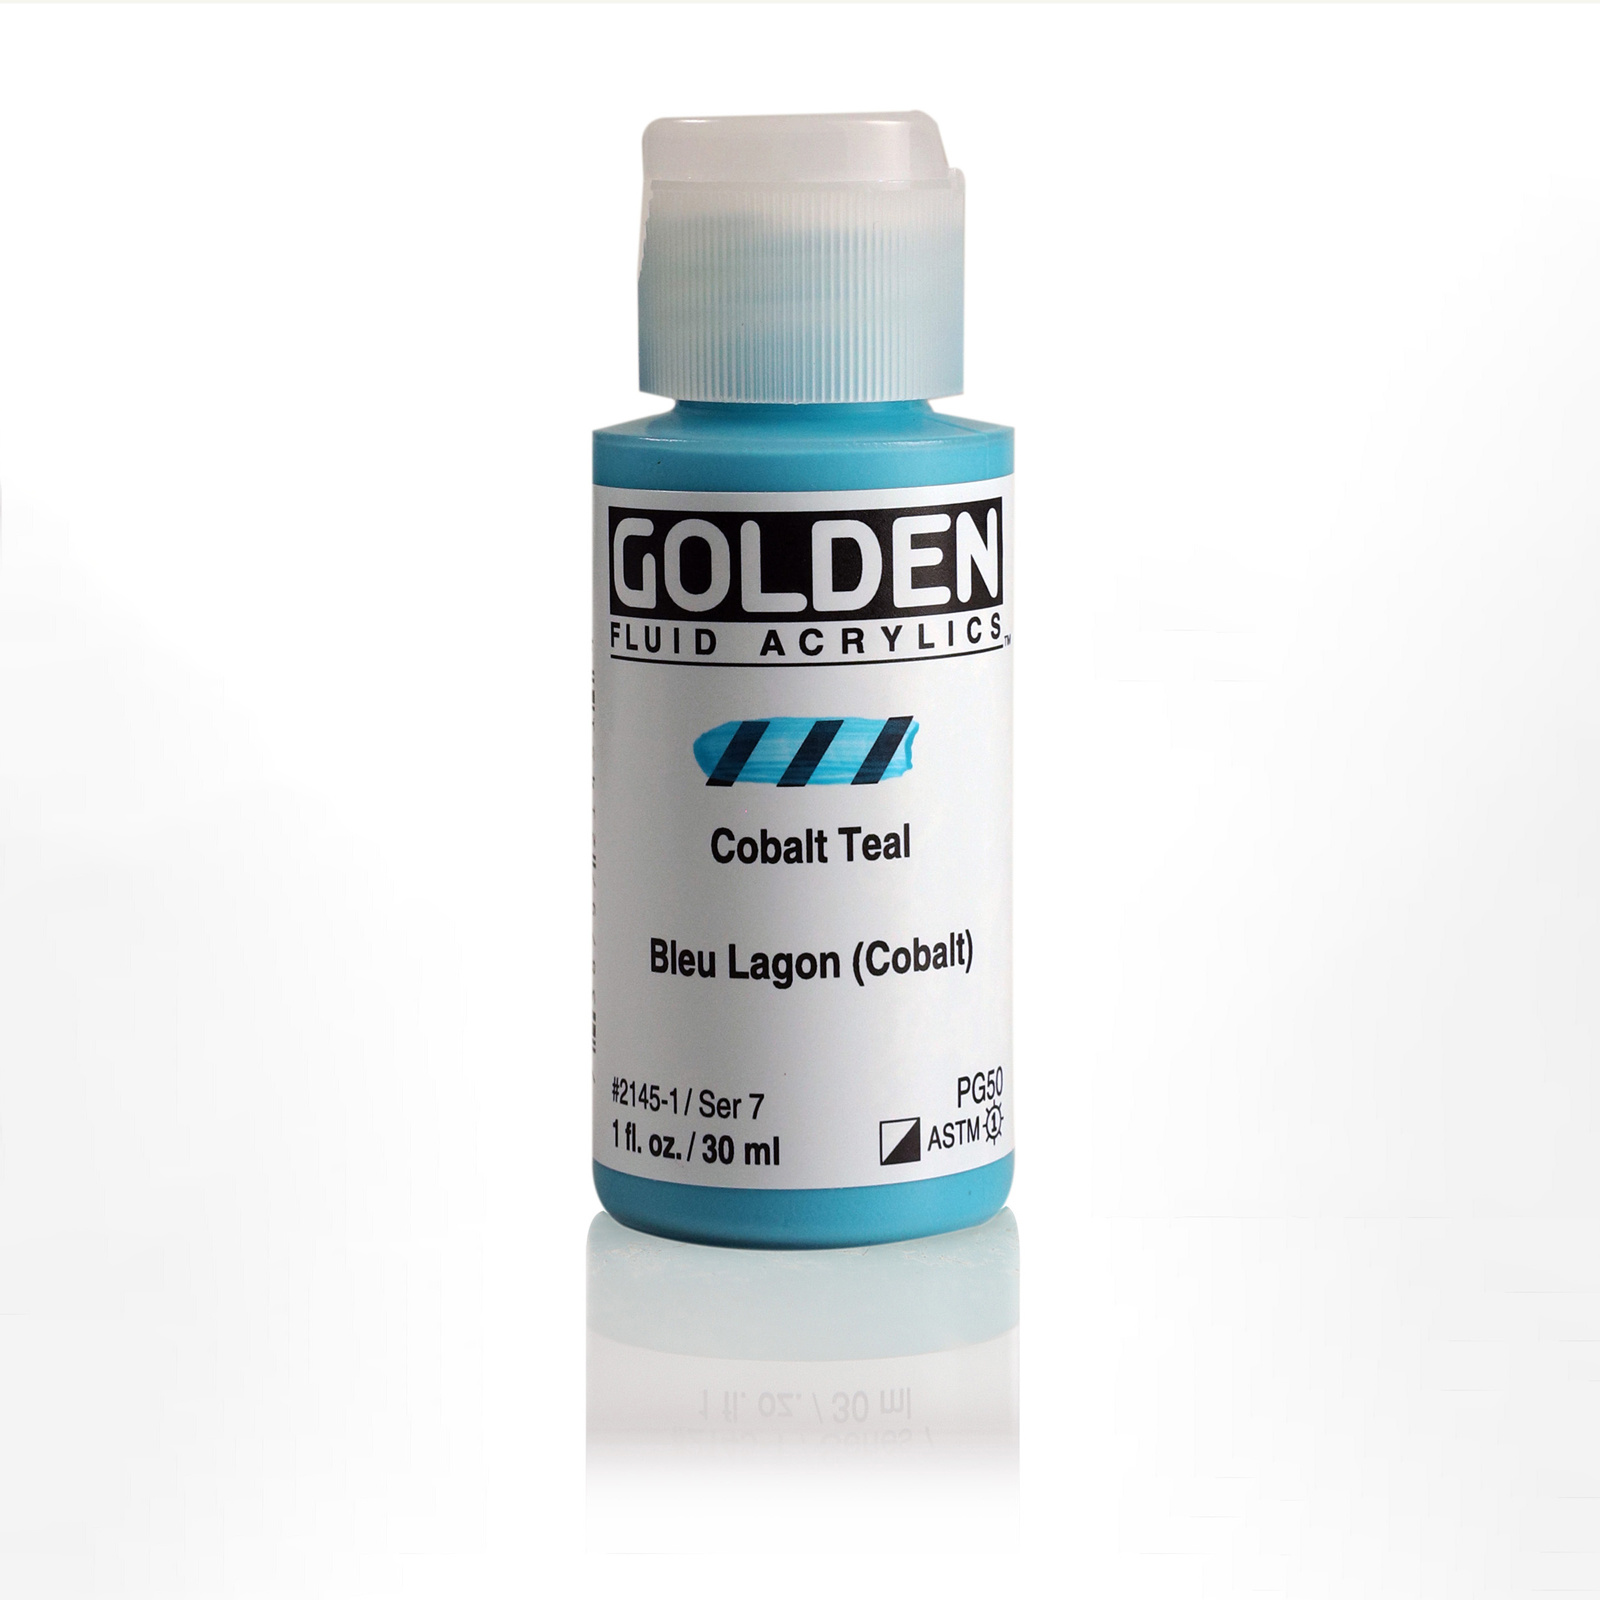 Golden Fluid Acrylics, 1 oz. Bottles, Cobalt Teal